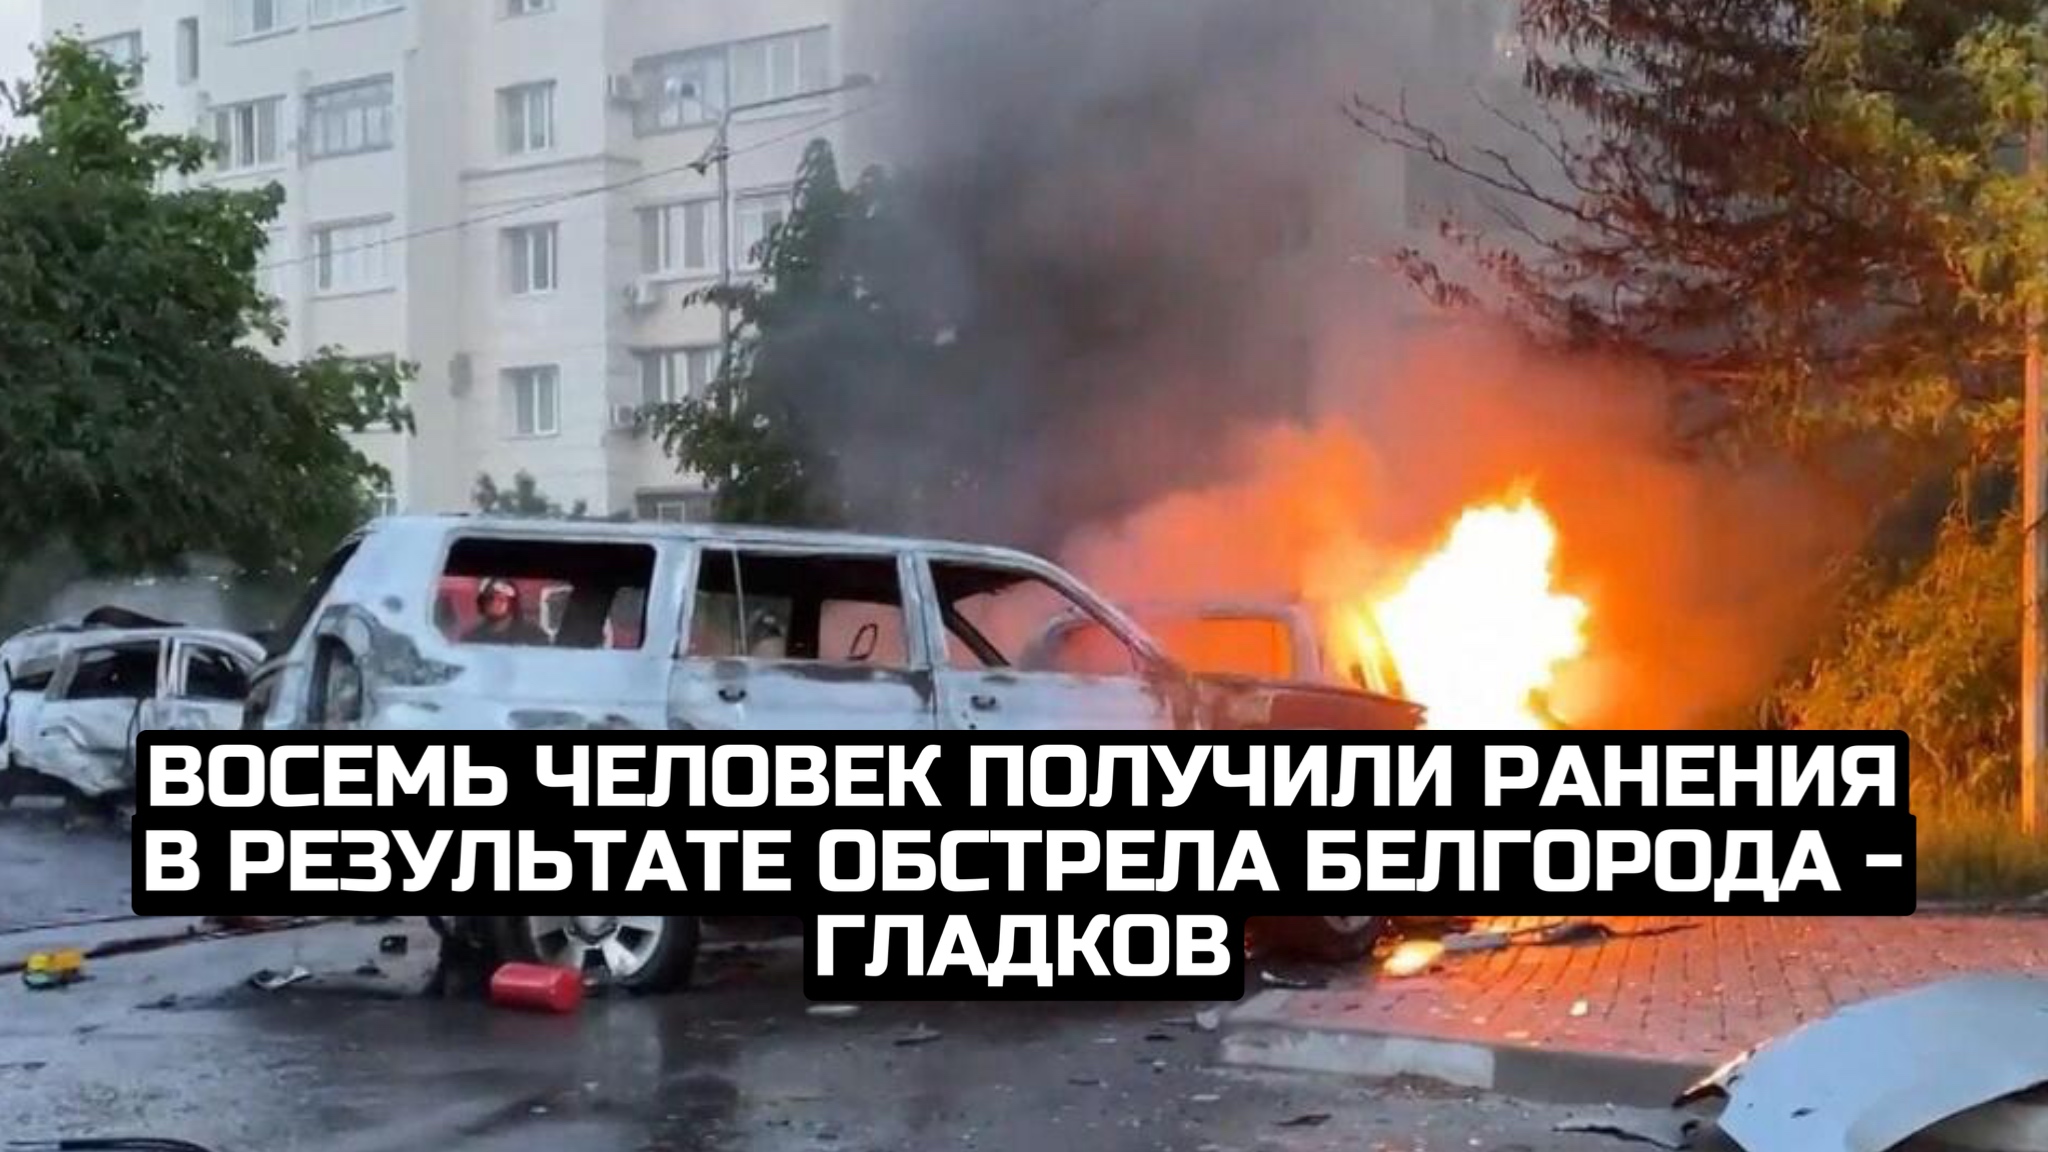 Восемь человек получили ранения в результате обстрела Белгорода - Гладков